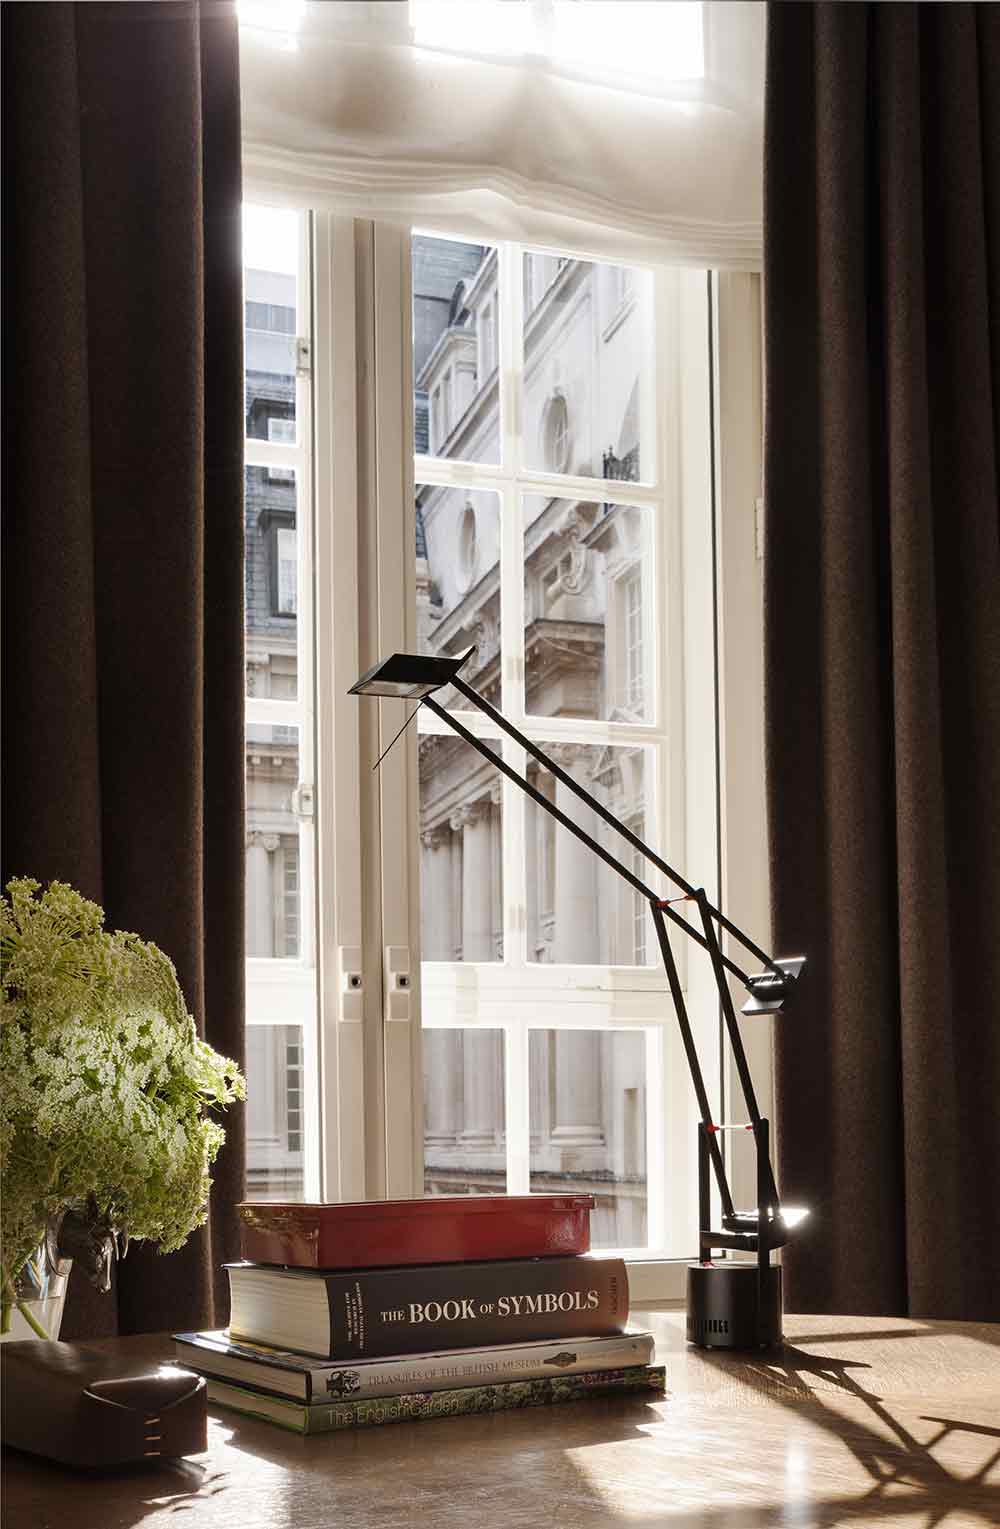 格子造型窗户前，茶褐色的窗帘体现着高雅的生活品味。造型简洁时尚的灯具充满个性。